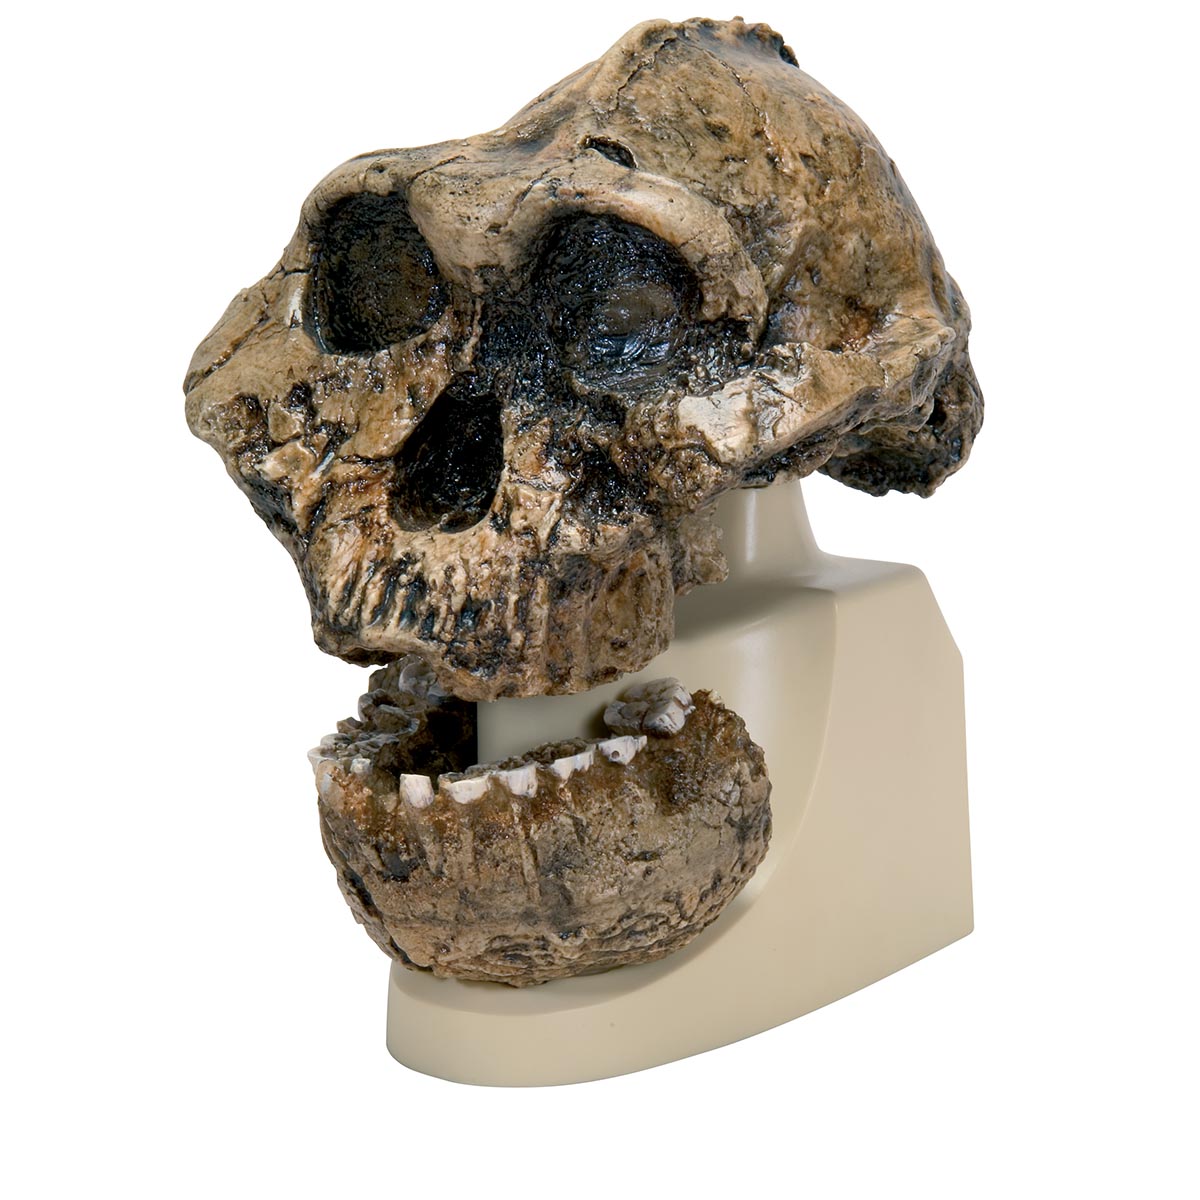 Schädelreplikat Australopithecus boisei (KNM-ER 406 + Omo L7A-125), Bestellnummer 1001298, VP755/1, 3B Scientific